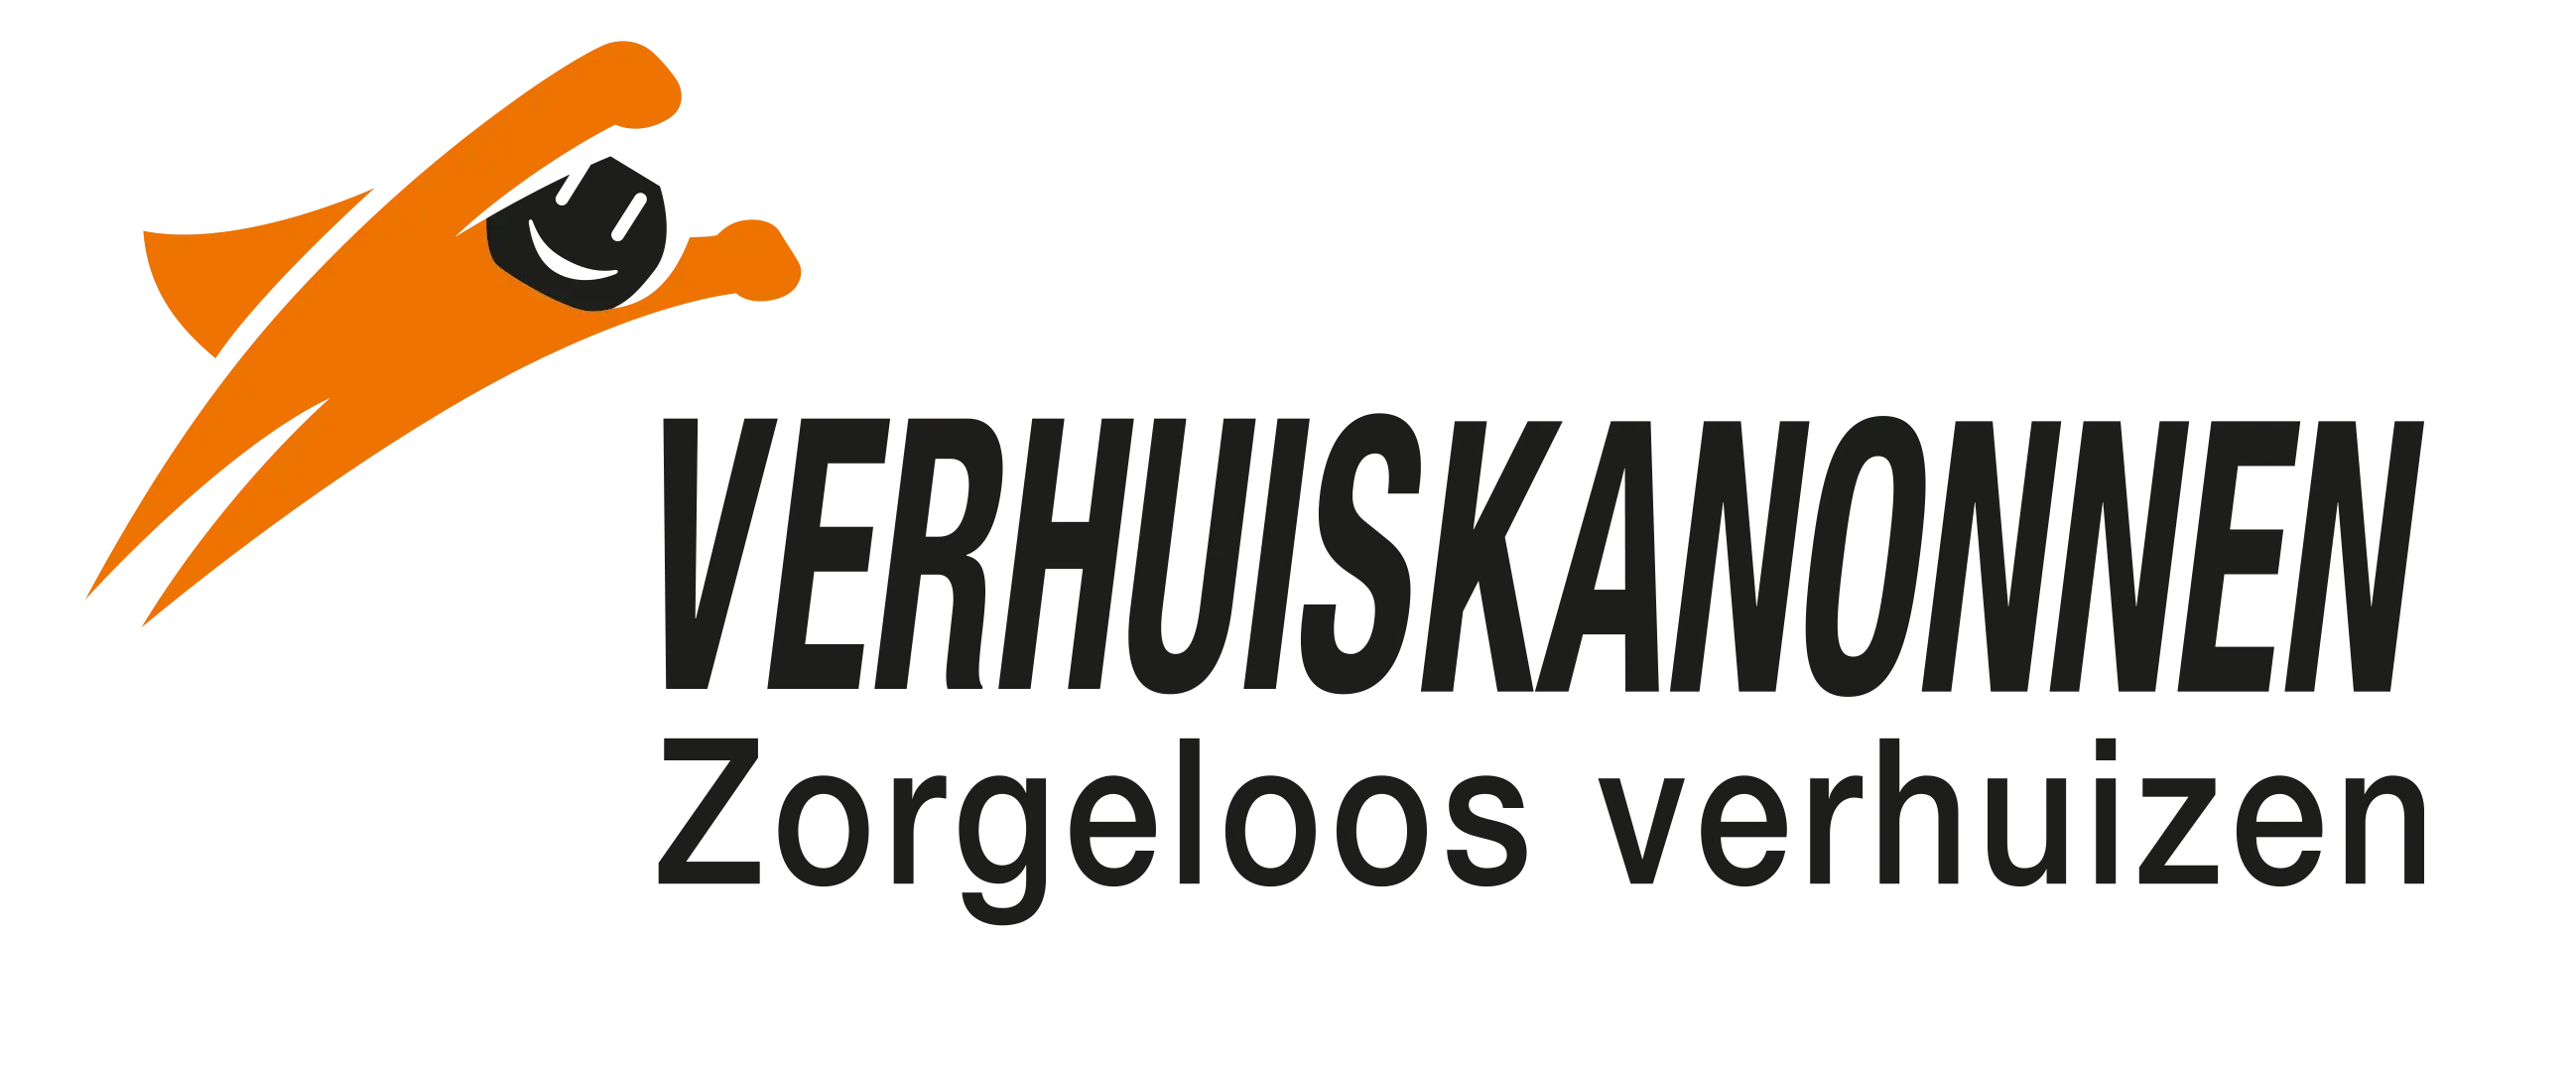 hertrooy logo